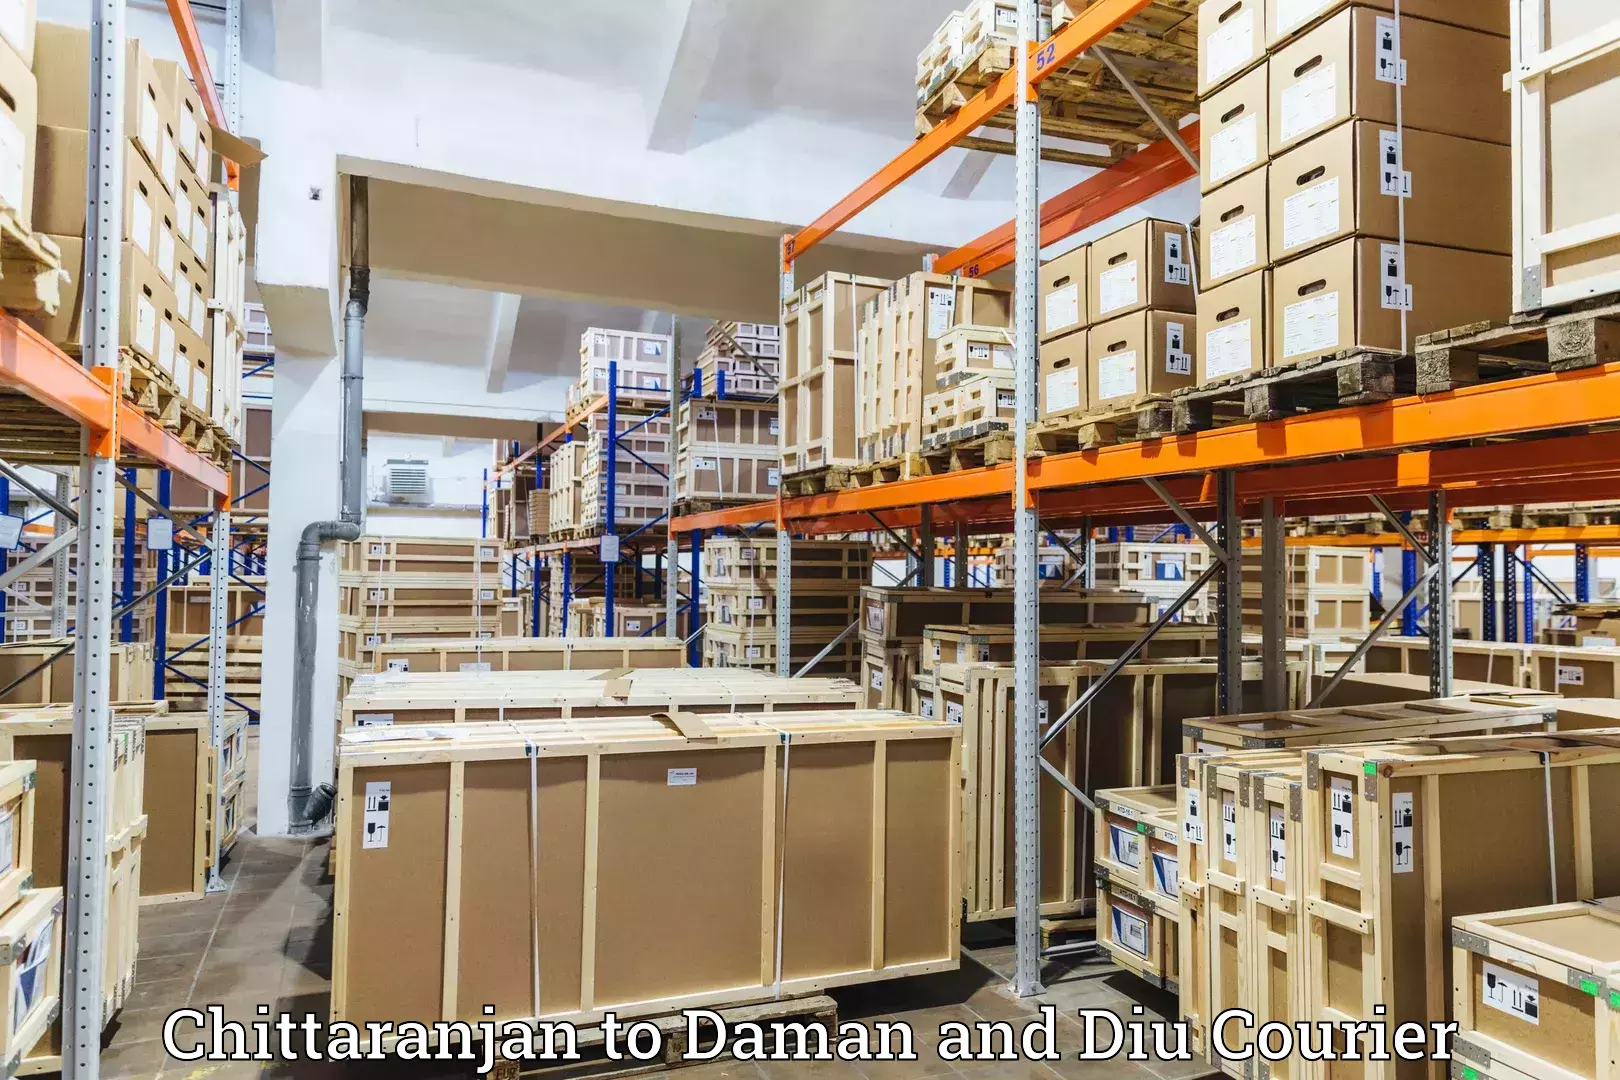 High-capacity parcel service Chittaranjan to Daman and Diu